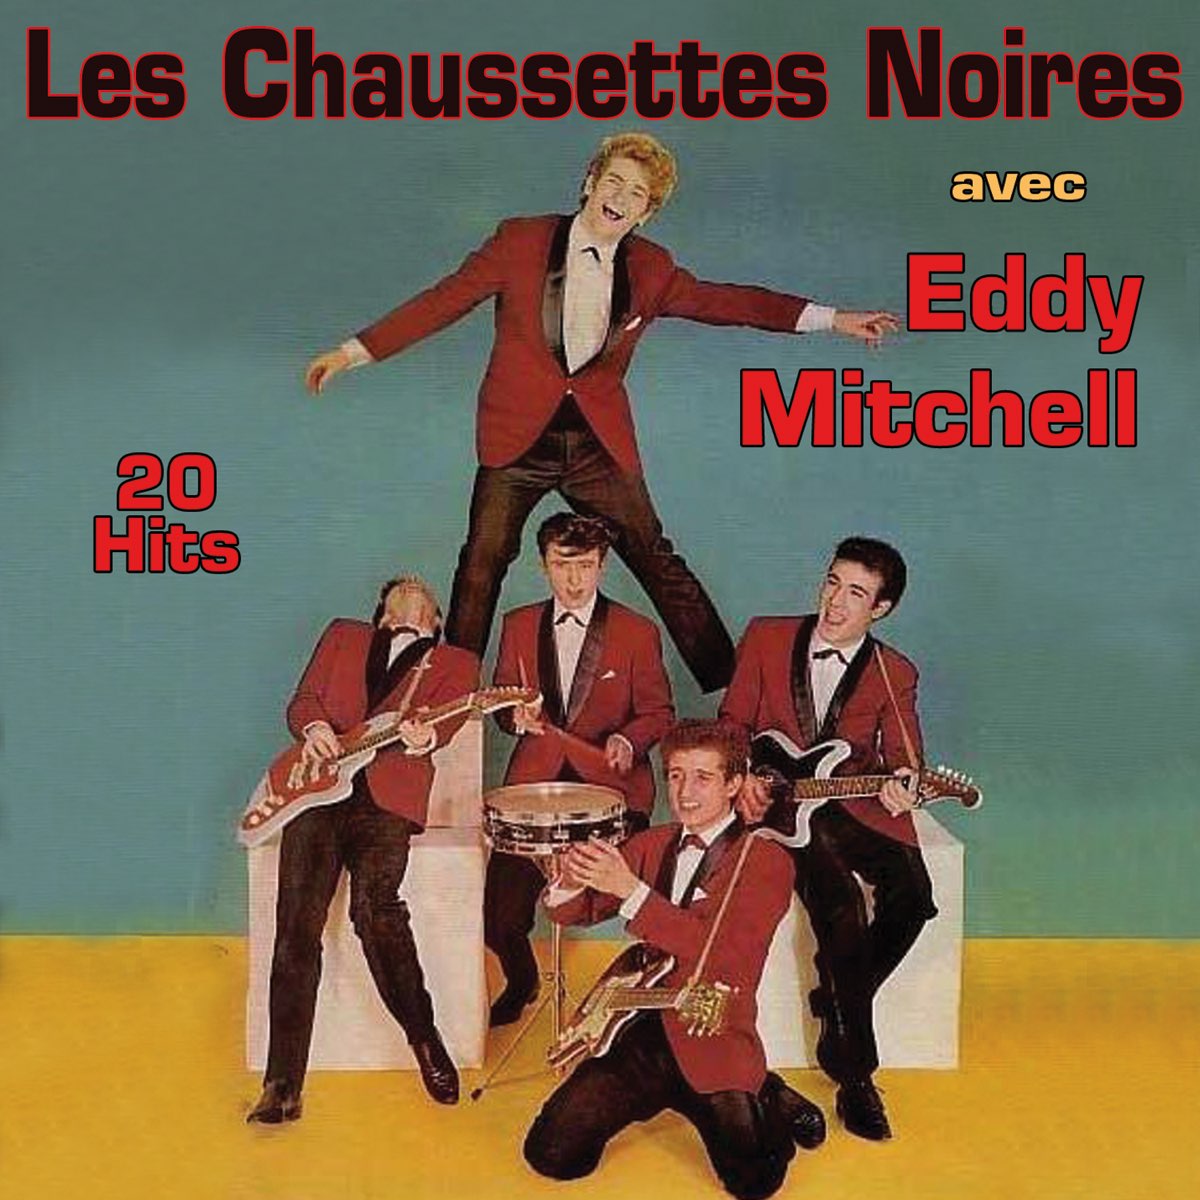 Eddy Mitchell et Les Chaussettes Noires par Eddy Mitchell & Les Chaussettes  Noires sur Apple Music